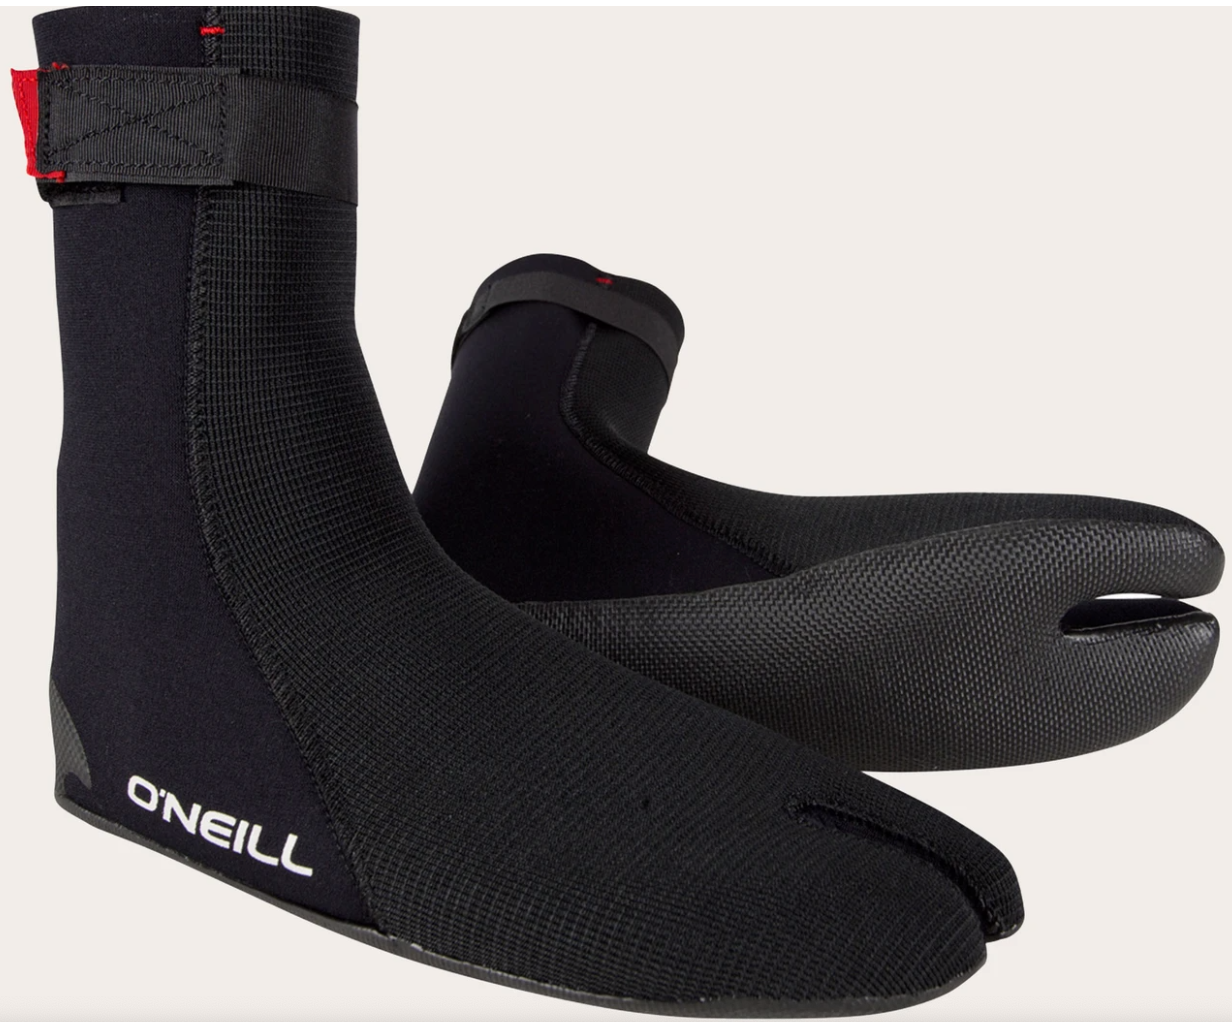 O'neill Ninja ST 3mm Boots